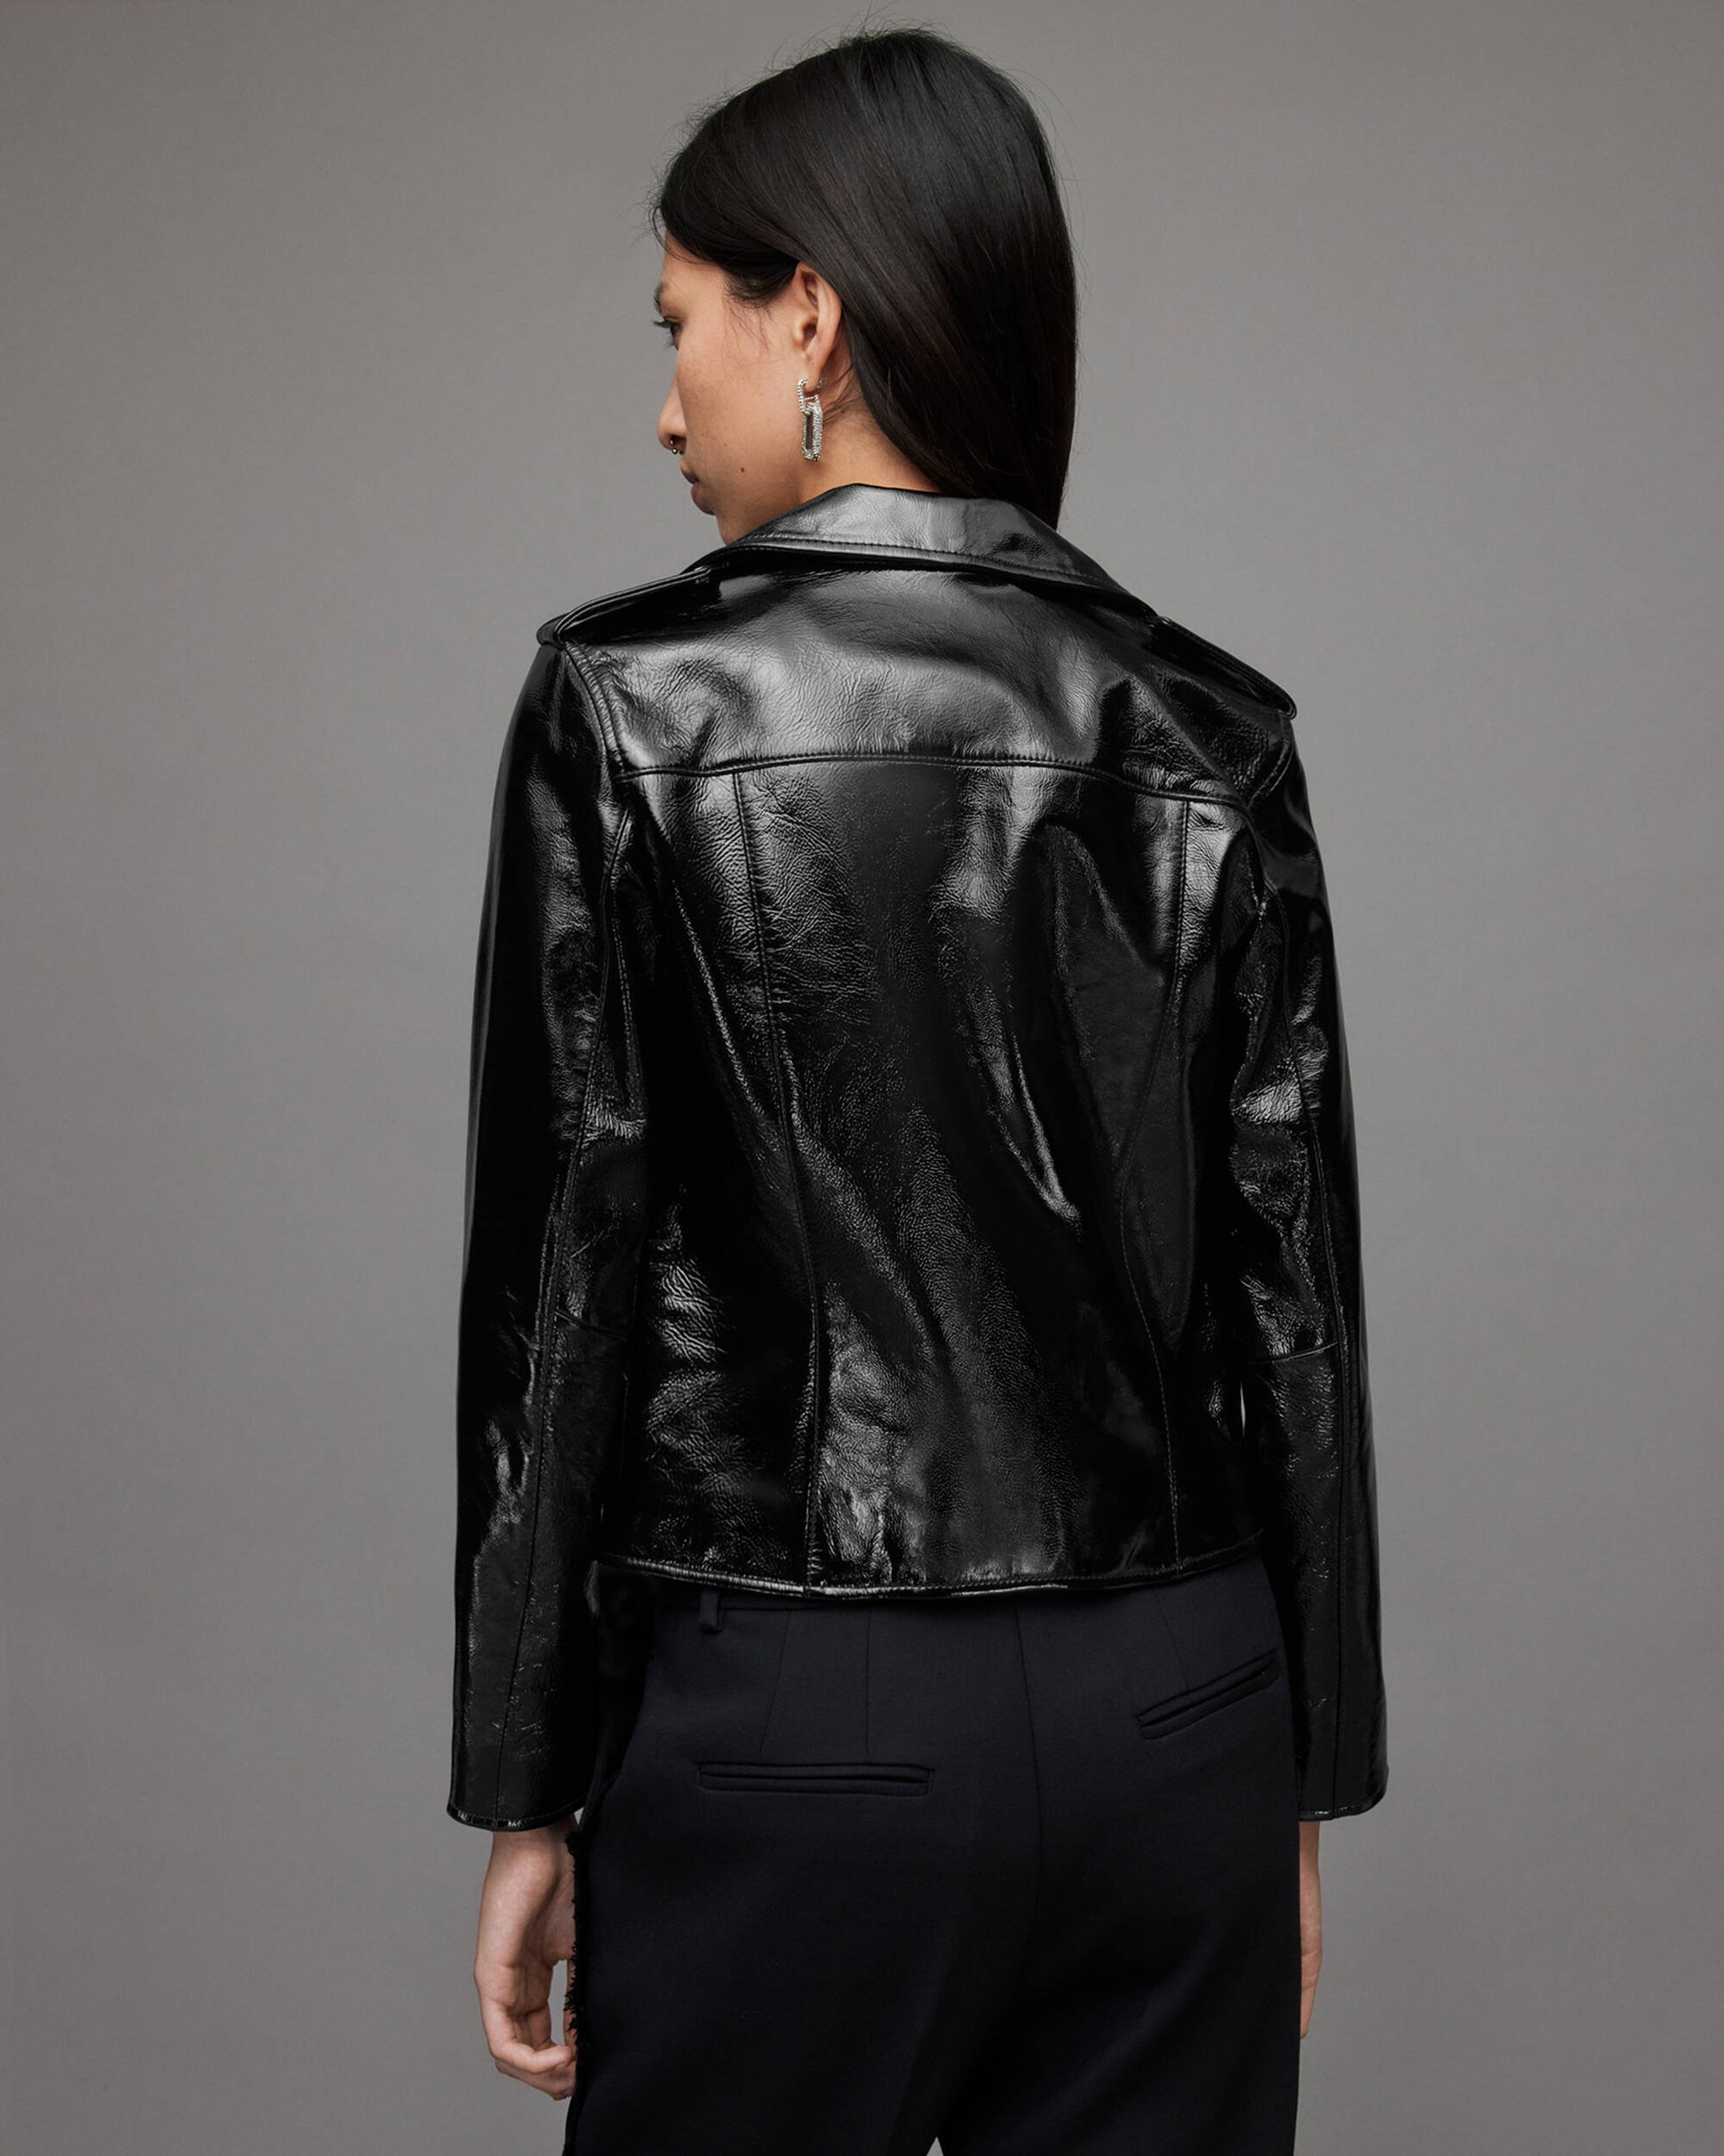 Women's Black Biker Leather Jacket With Shoulder Straps